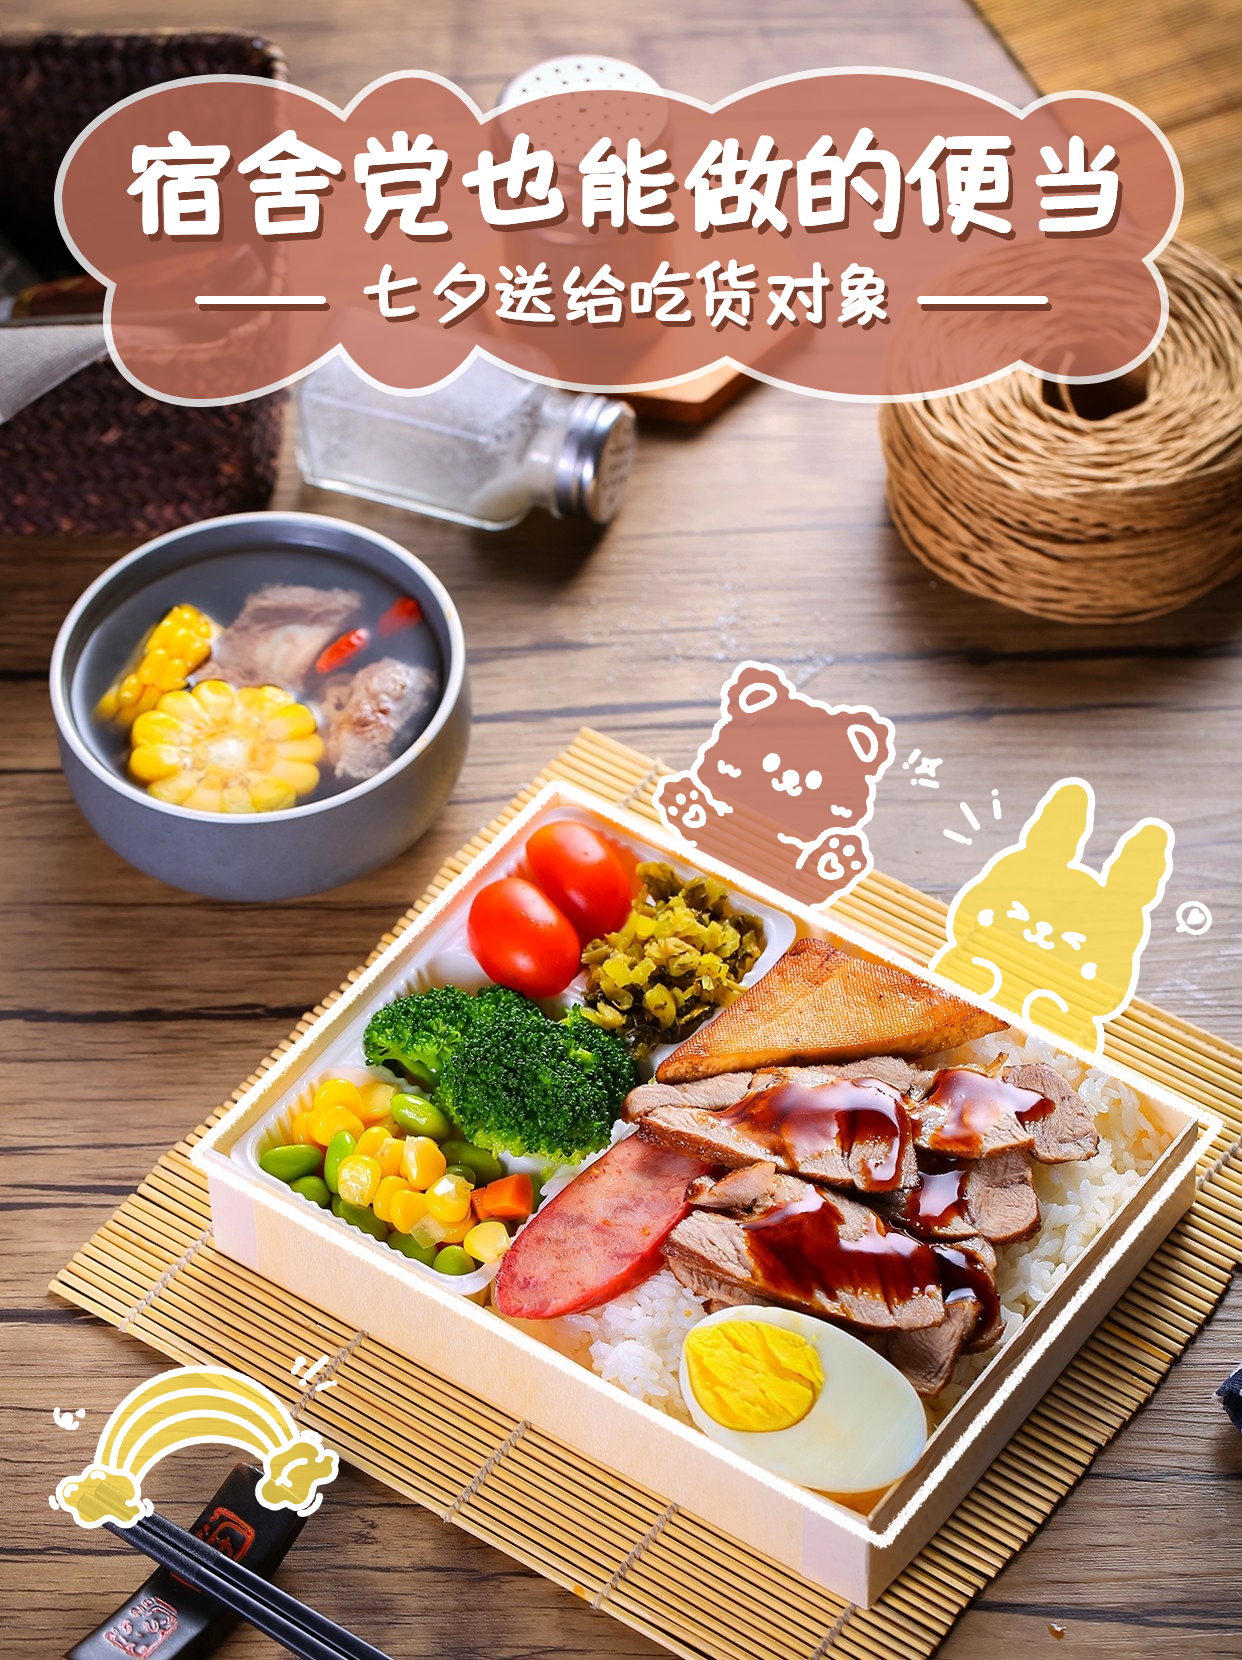 七夕餐饮美食节日营销实景海报预览效果